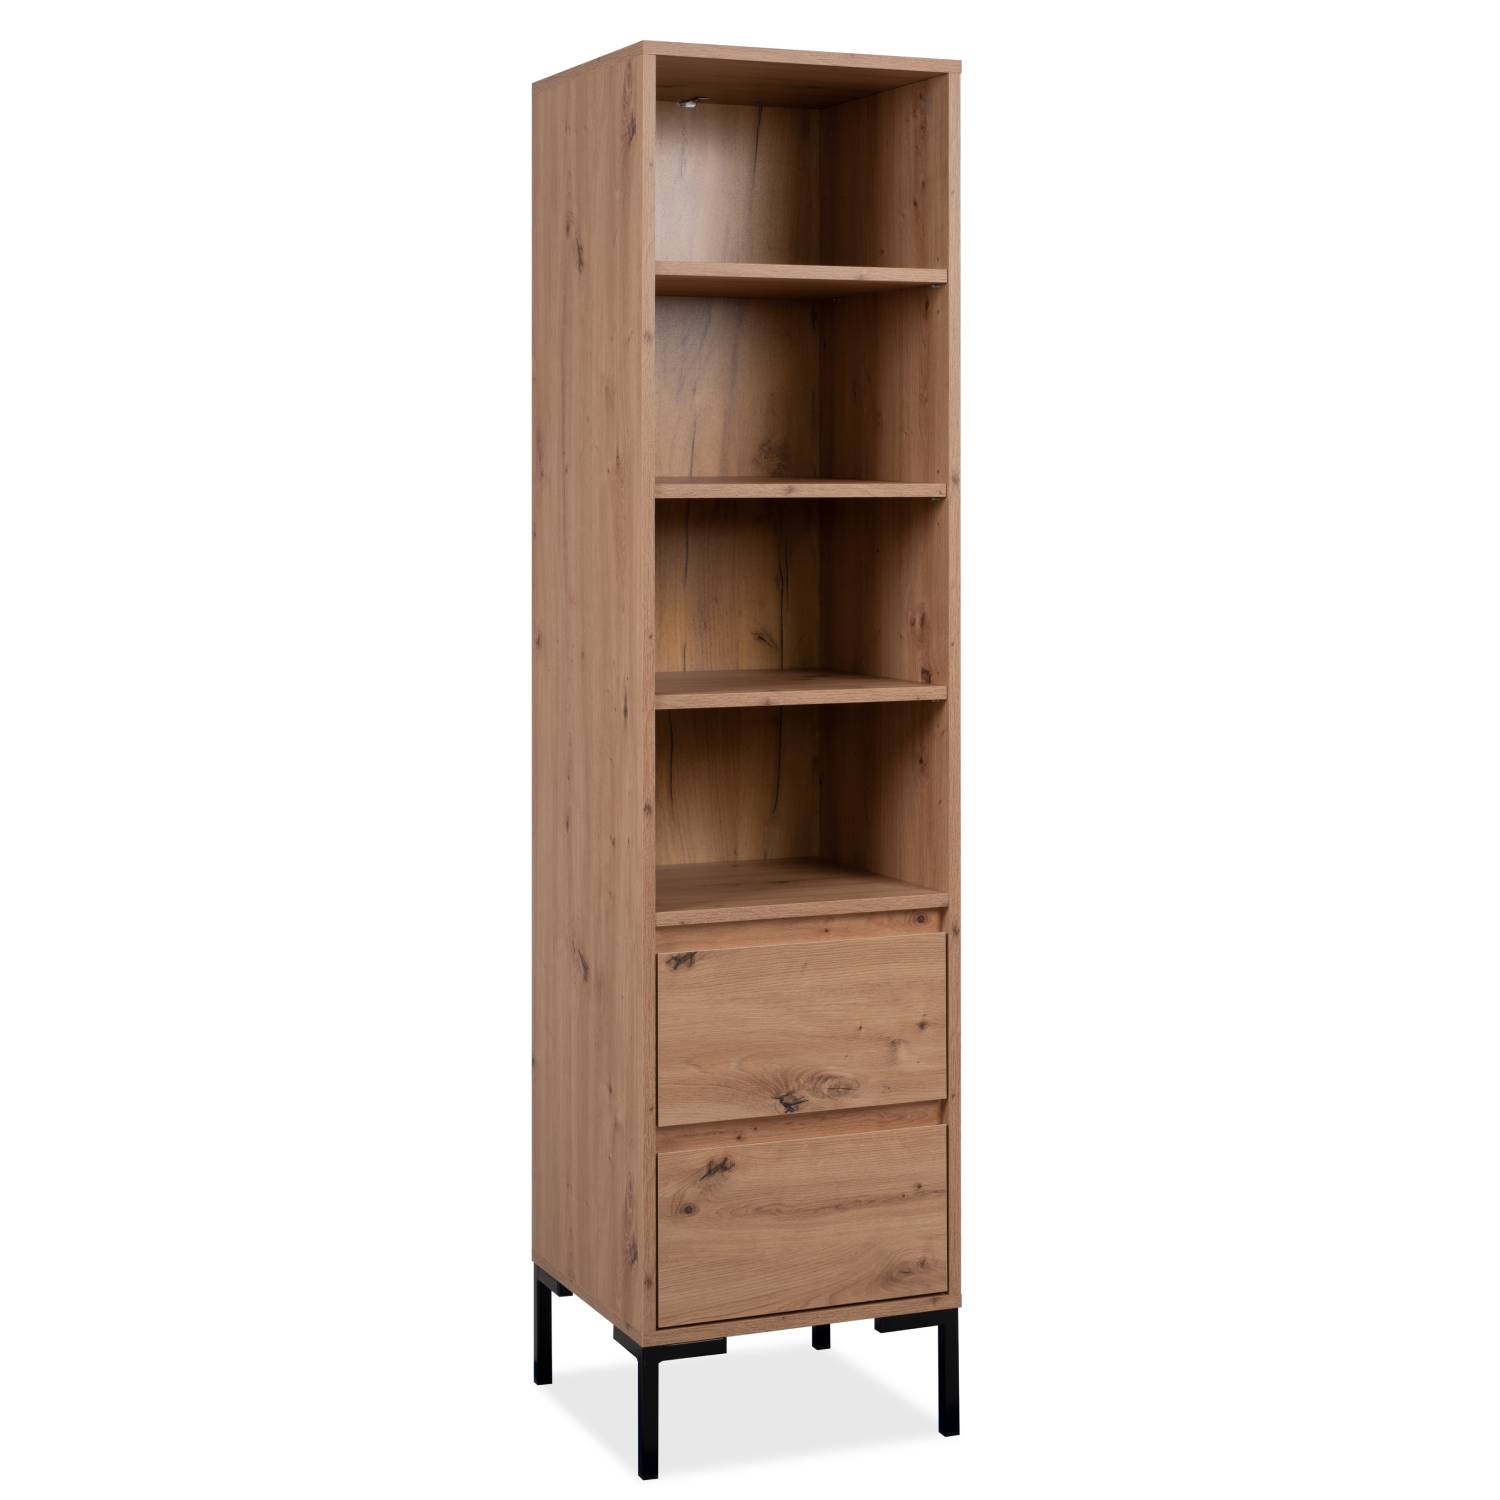 Shelf Bookcase Industrial Design Wall Unit Metal Black Wood Oak Office Cabinet